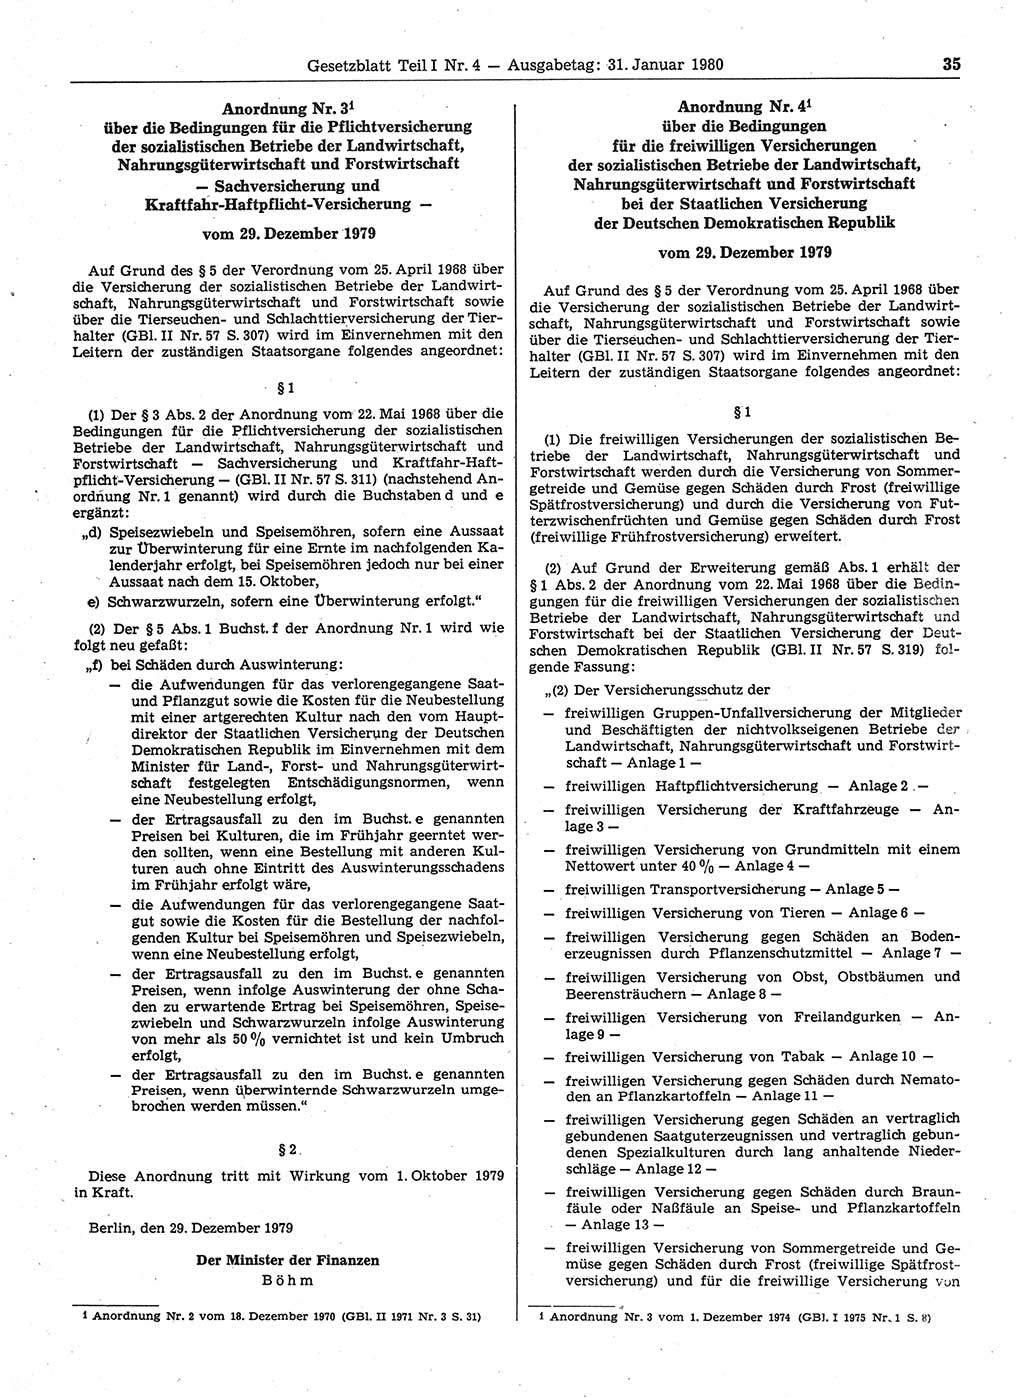 Gesetzblatt (GBl.) der Deutschen Demokratischen Republik (DDR) Teil Ⅰ 1980, Seite 35 (GBl. DDR Ⅰ 1980, S. 35)